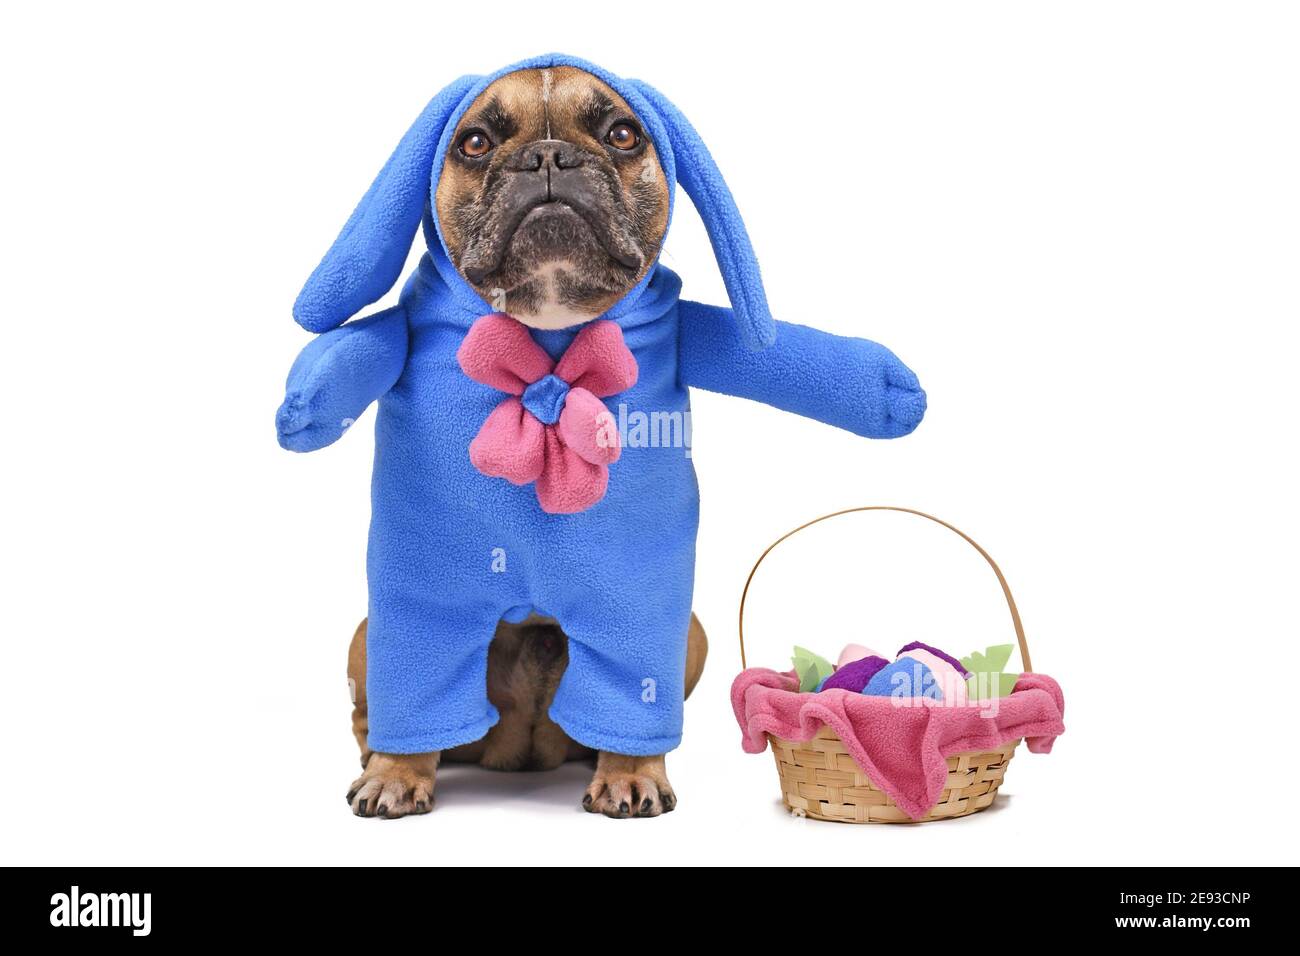 Französisch Bulldogge Hund verkleidet mit Osterhase Kostüm mit Blauer Ganzkörperanzug neben dem Osterkorb mit Eiern Isoliert auf weißem Hintergrund Stockfoto